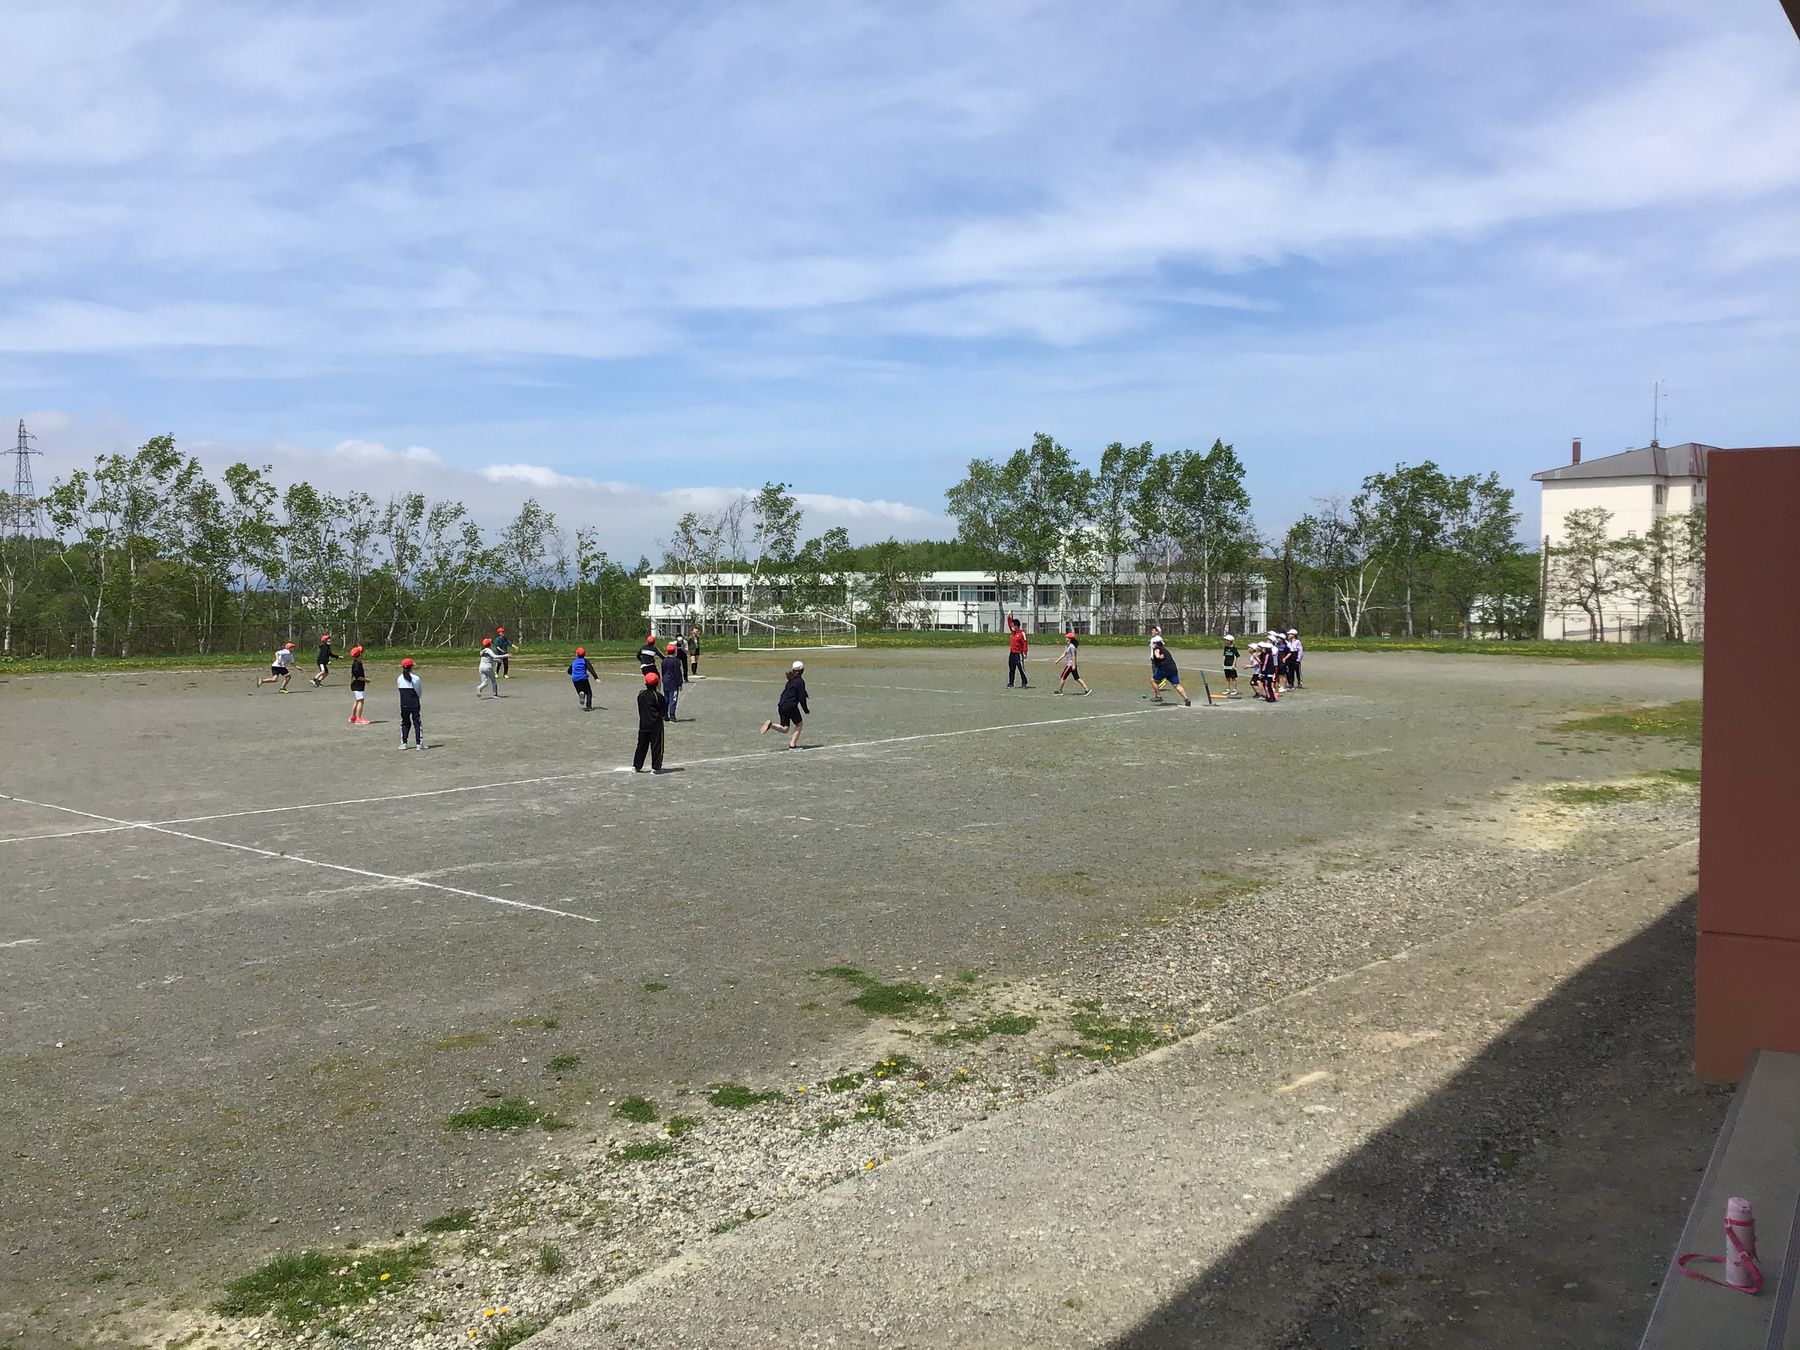 青空の下、学校のグラウンドで球を使って運動をしている、赤や白の帽子をかぶった子供たちの写真